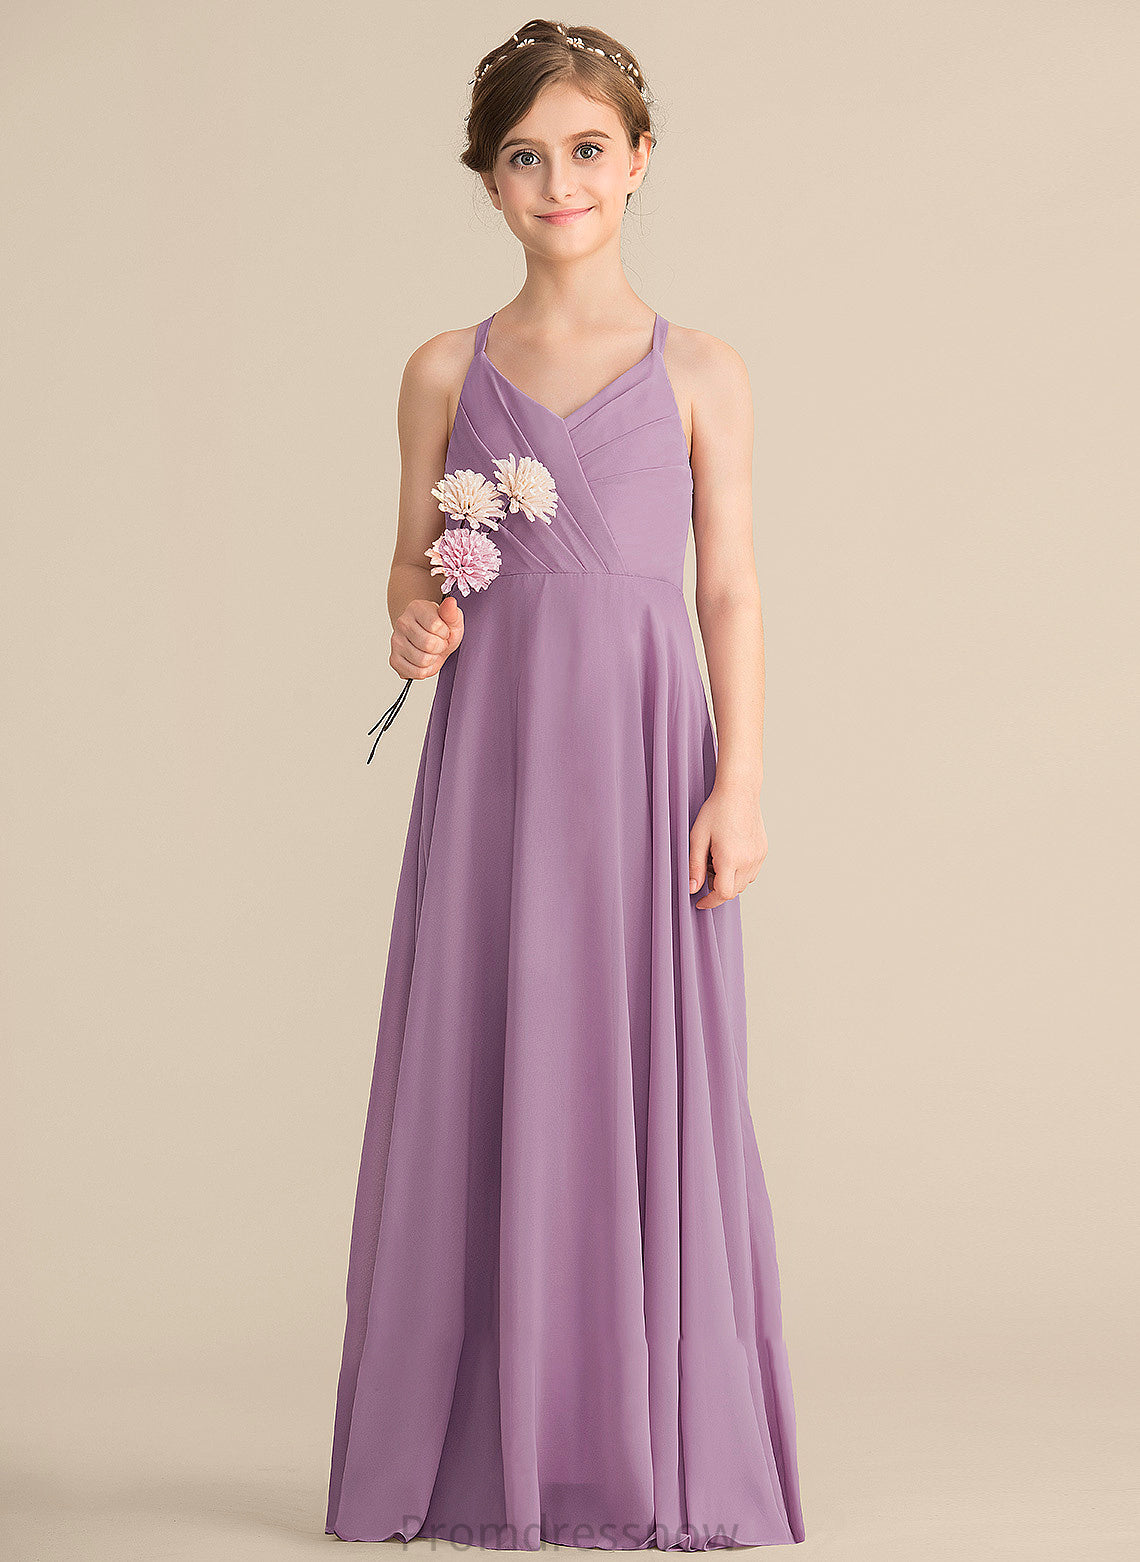 V-neck Ruffles A-Line Chiffon Junior Bridesmaid Dresses Floor-Length With Cascading Persis